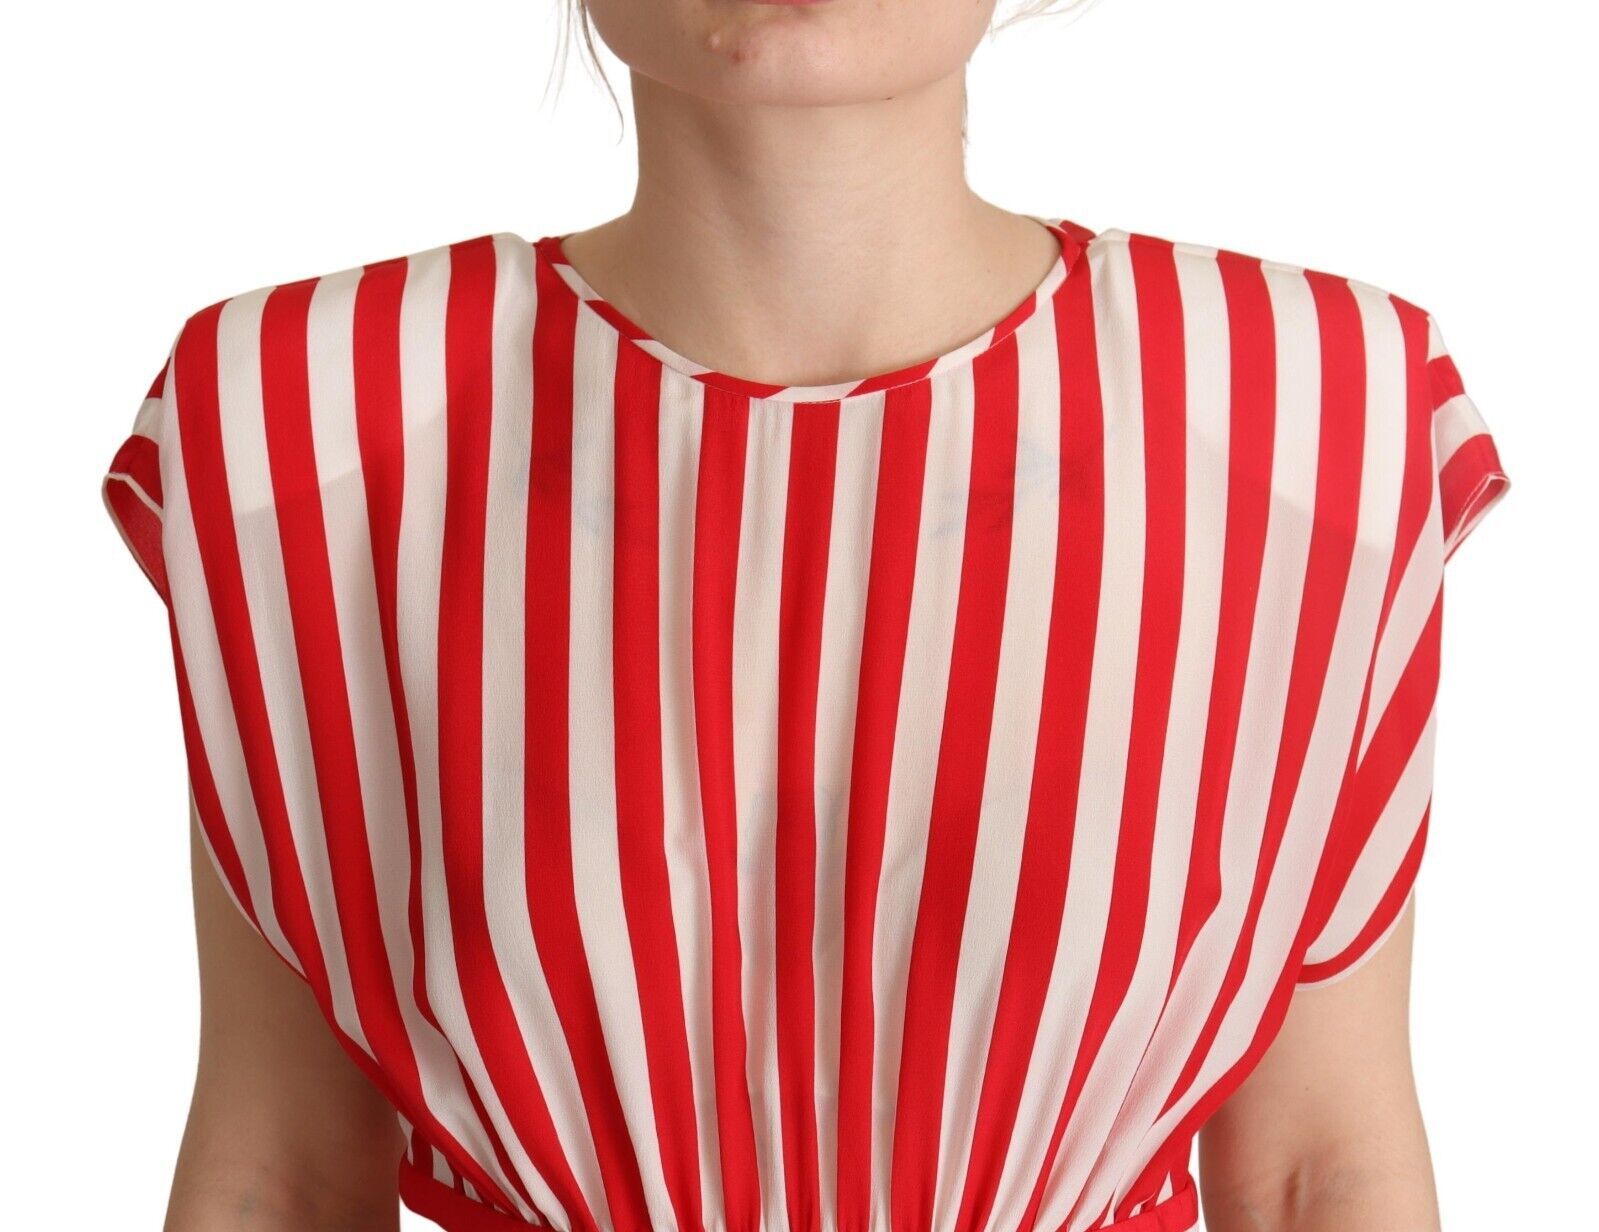 Elegant Striped Silk A-Line Mini Dress